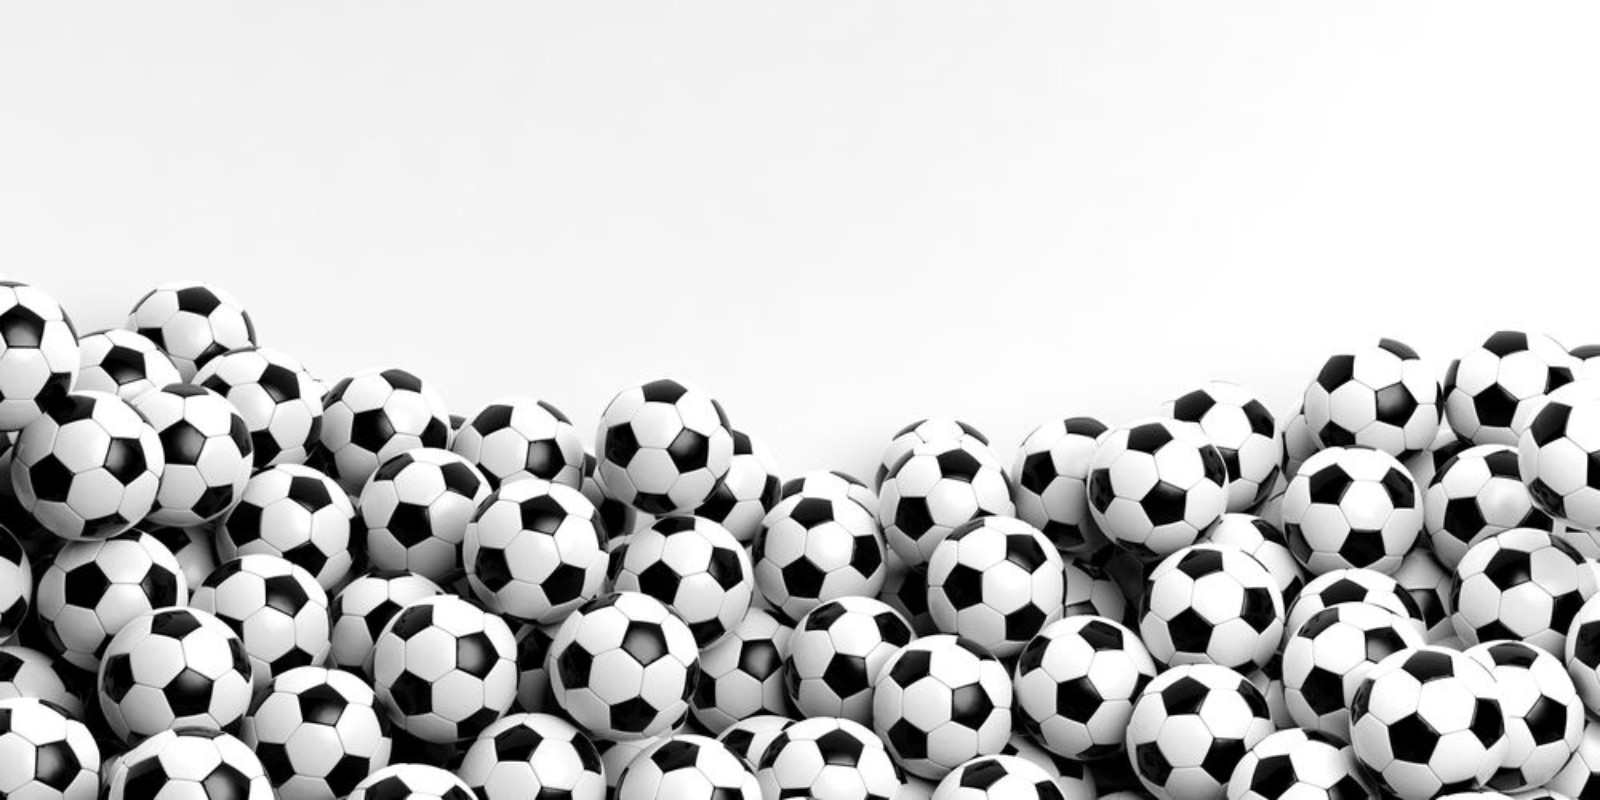 Image de Soccer balls background 3d illustration